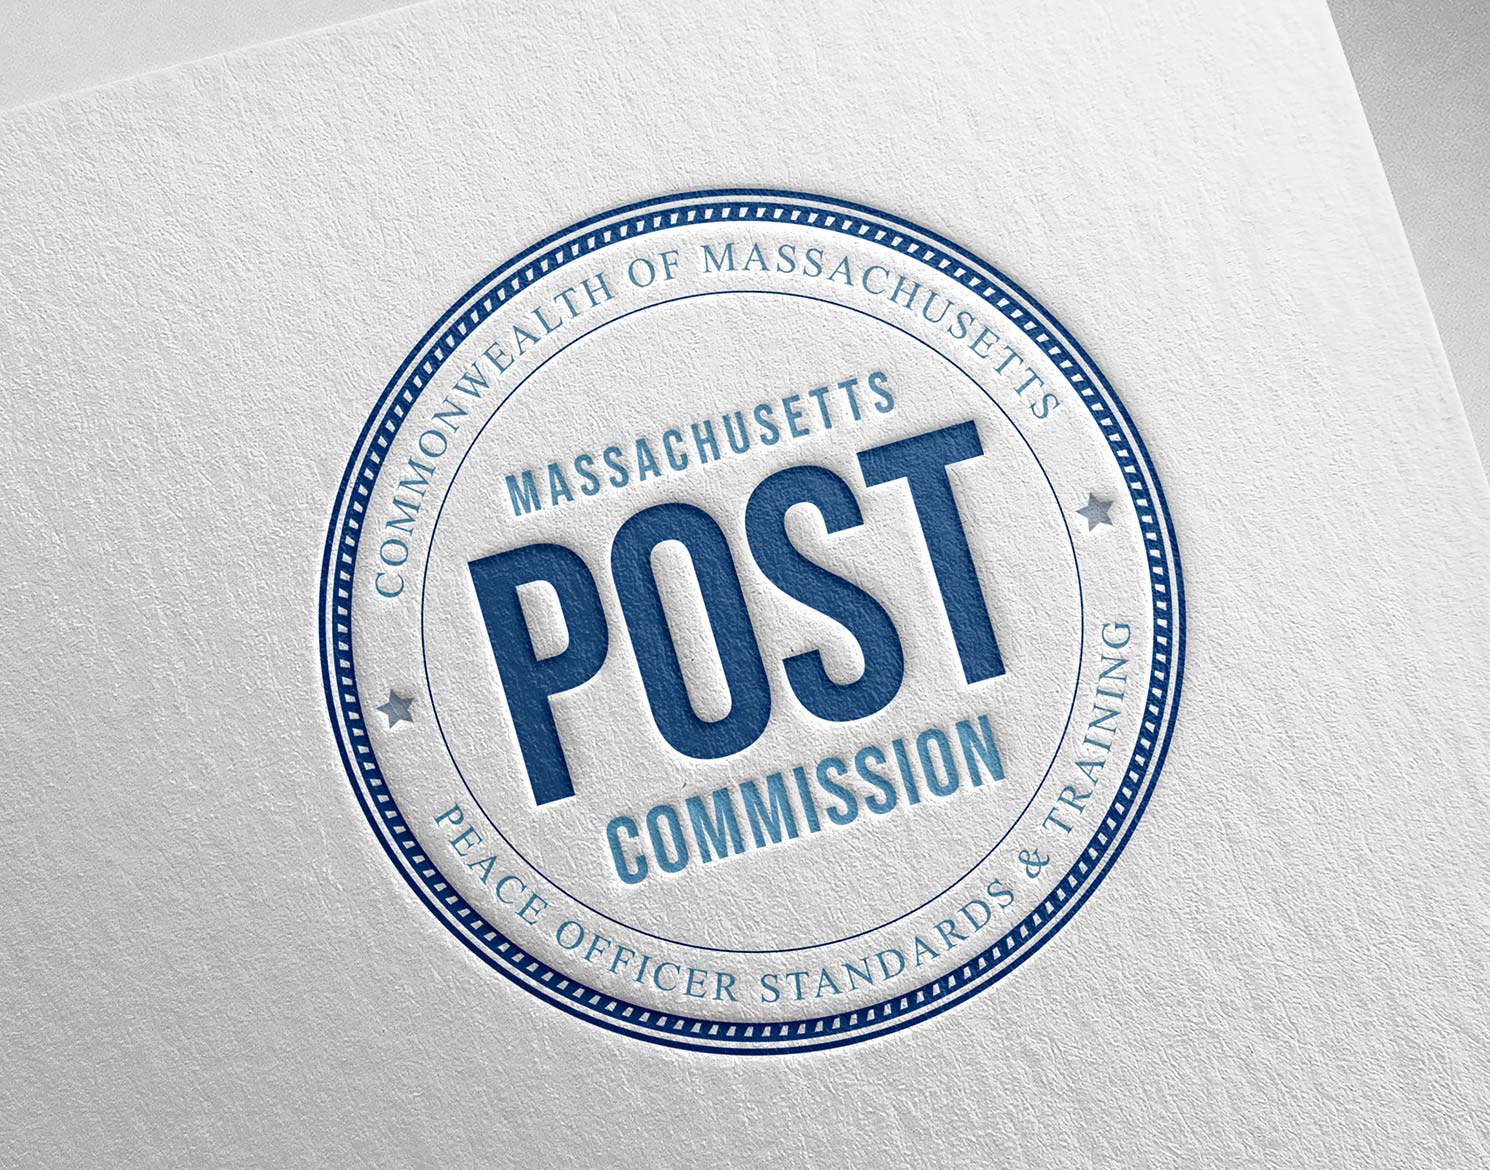 Massachusetts POST Commission logo design letter-pressed on paper